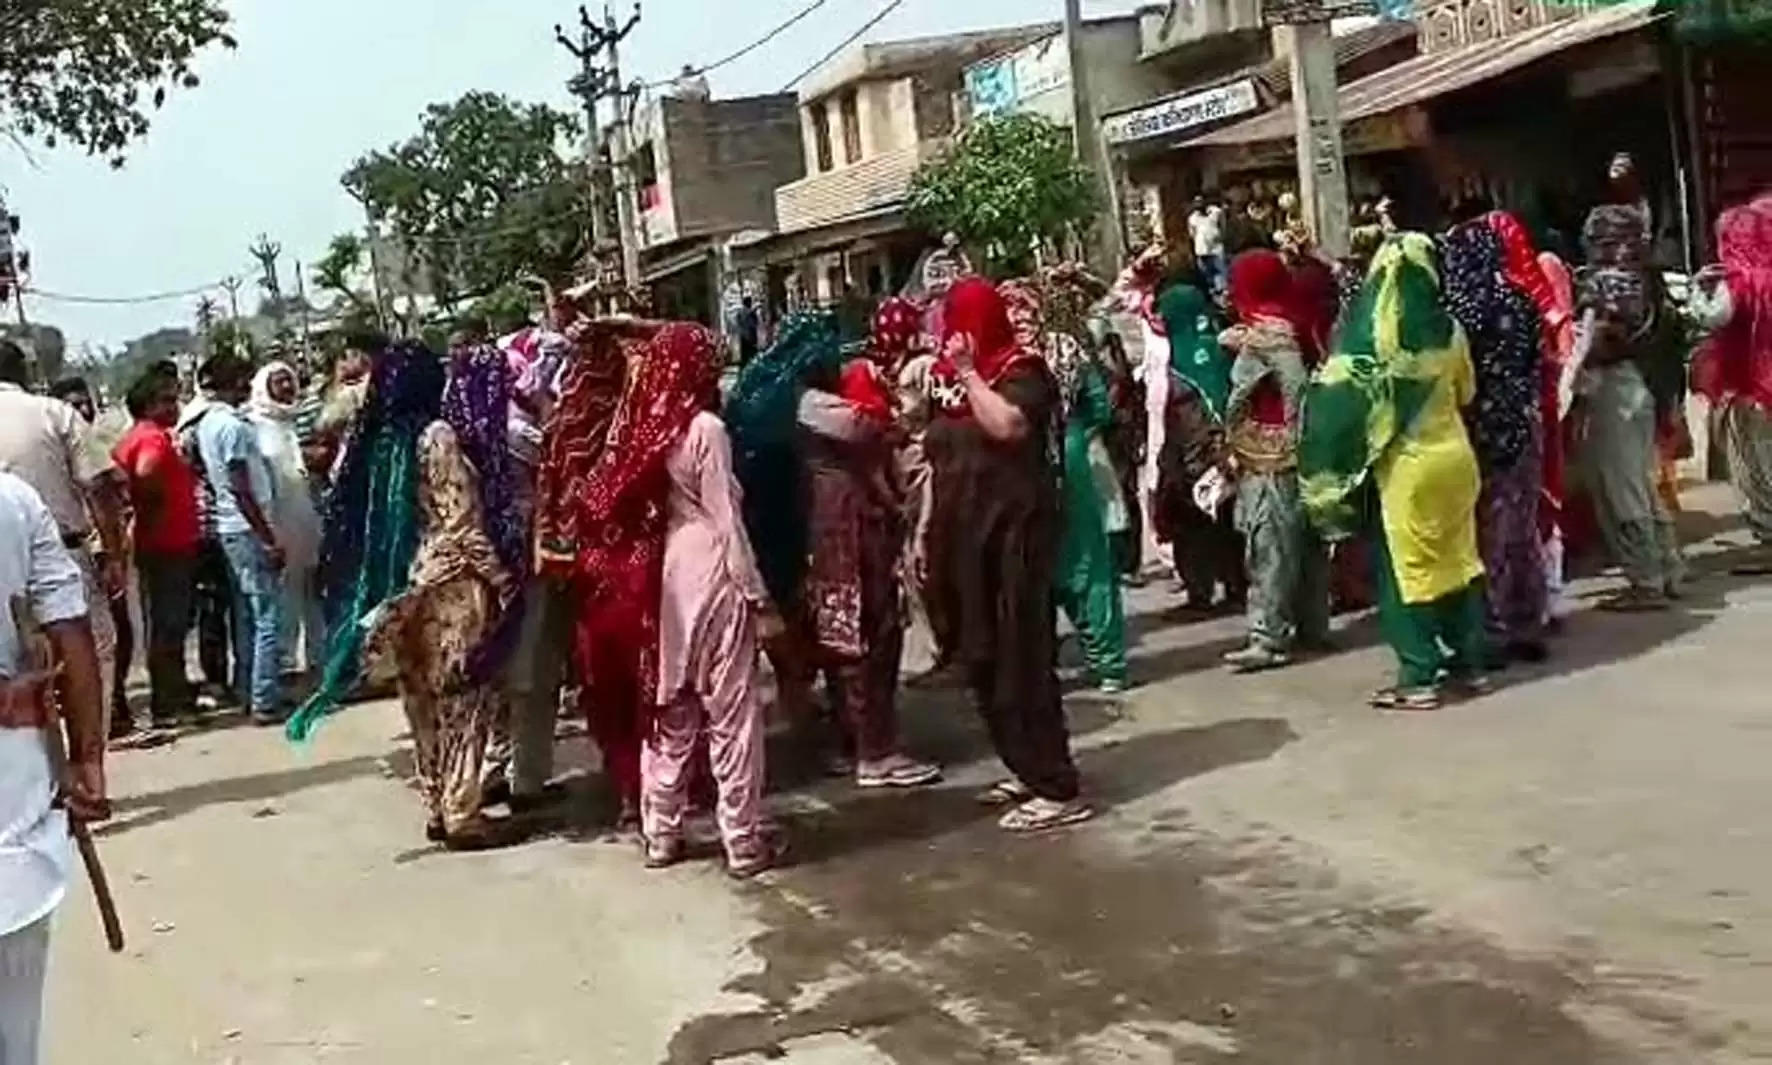   बिठमड़ा में पेयजल संकट गहराया, महिलाओं ने किया हिसार-टोहाना रोड जाम